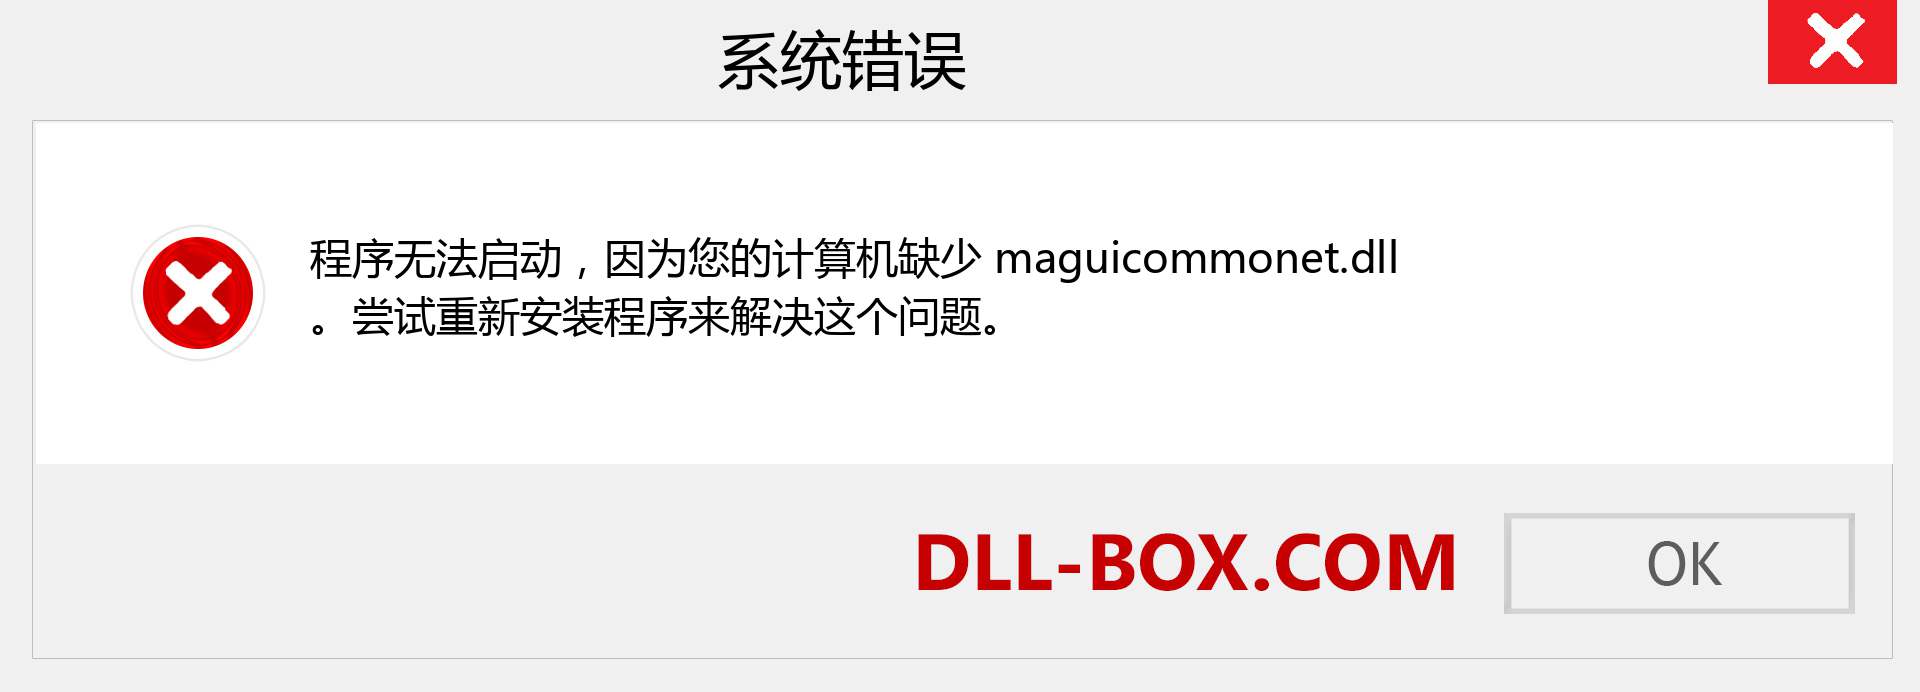 maguicommonet.dll 文件丢失？。 适用于 Windows 7、8、10 的下载 - 修复 Windows、照片、图像上的 maguicommonet dll 丢失错误